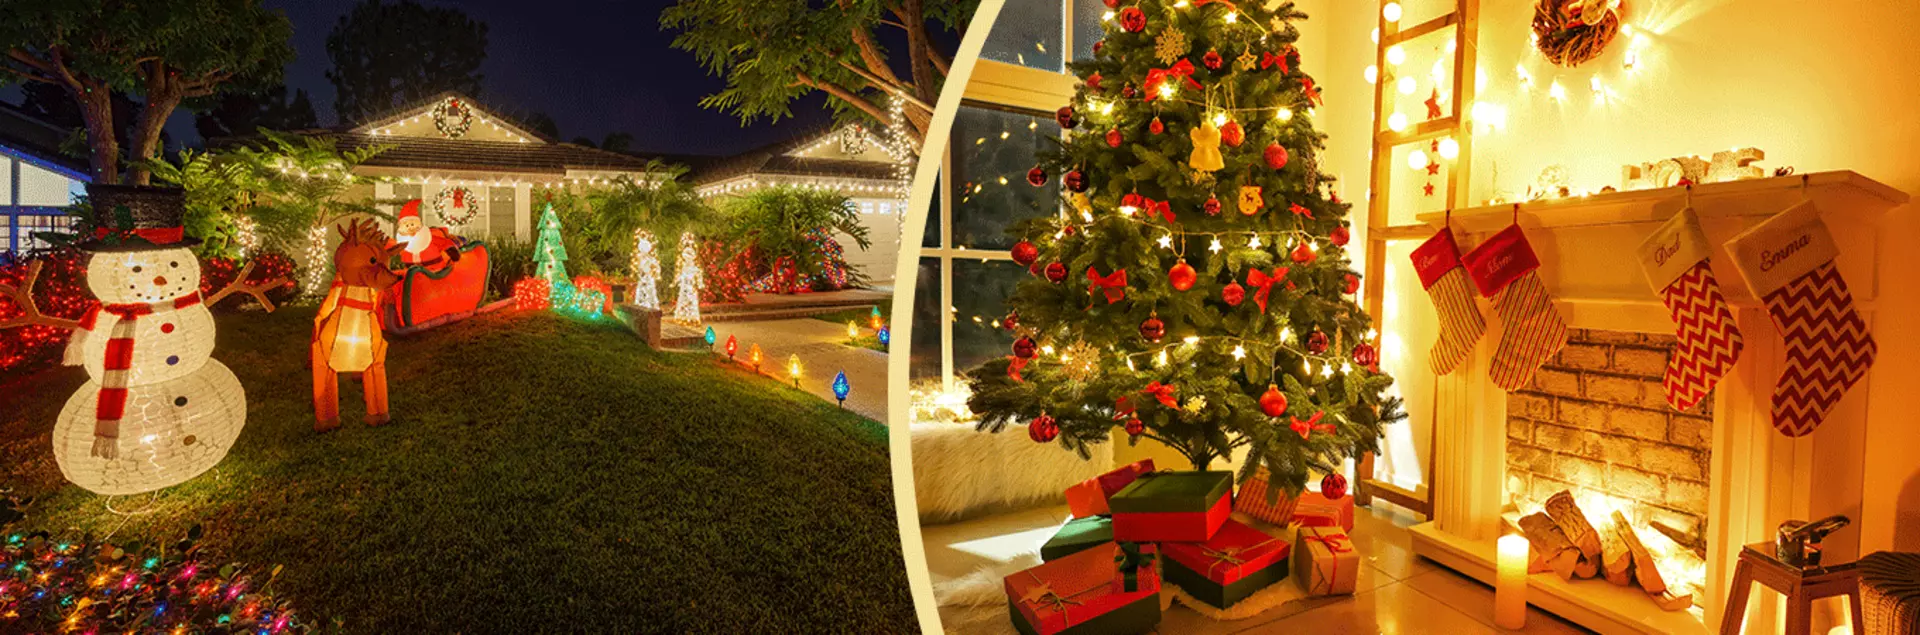 Traditionell bis modern, warmweiß bis bunt blinkend, für innen und außen - Weihnachtsbeleuchtung gibt es in vielen Formen, Farben und Varianten